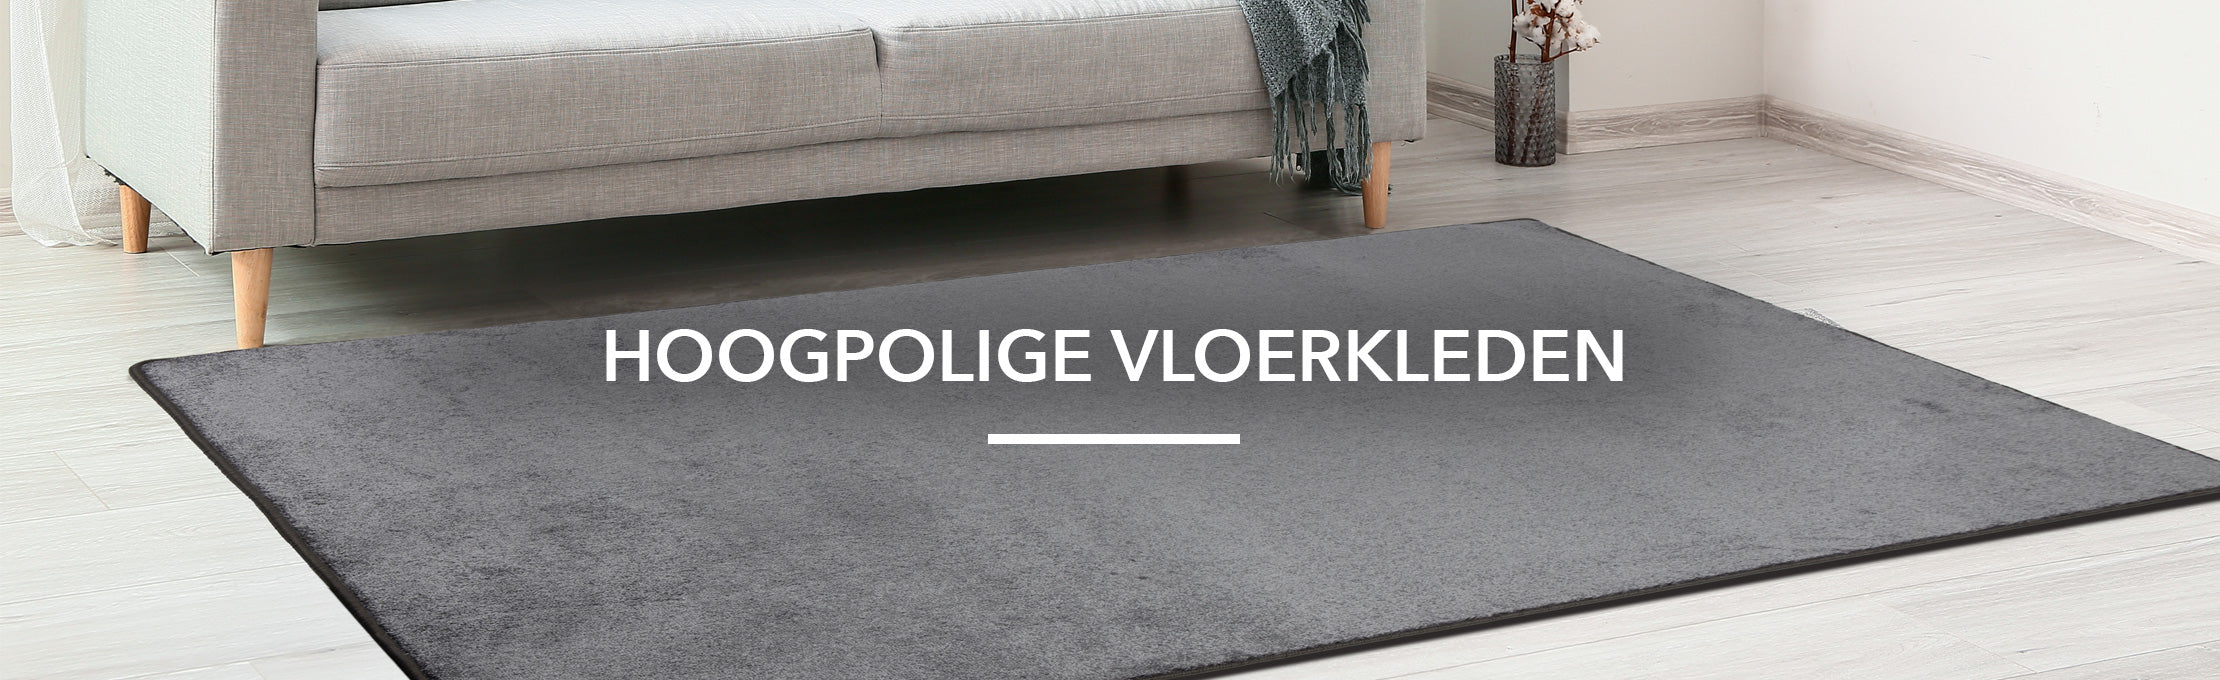 Civic verzonden onderwijzen Hoogpolige vloerkleden — NL Floordirekt